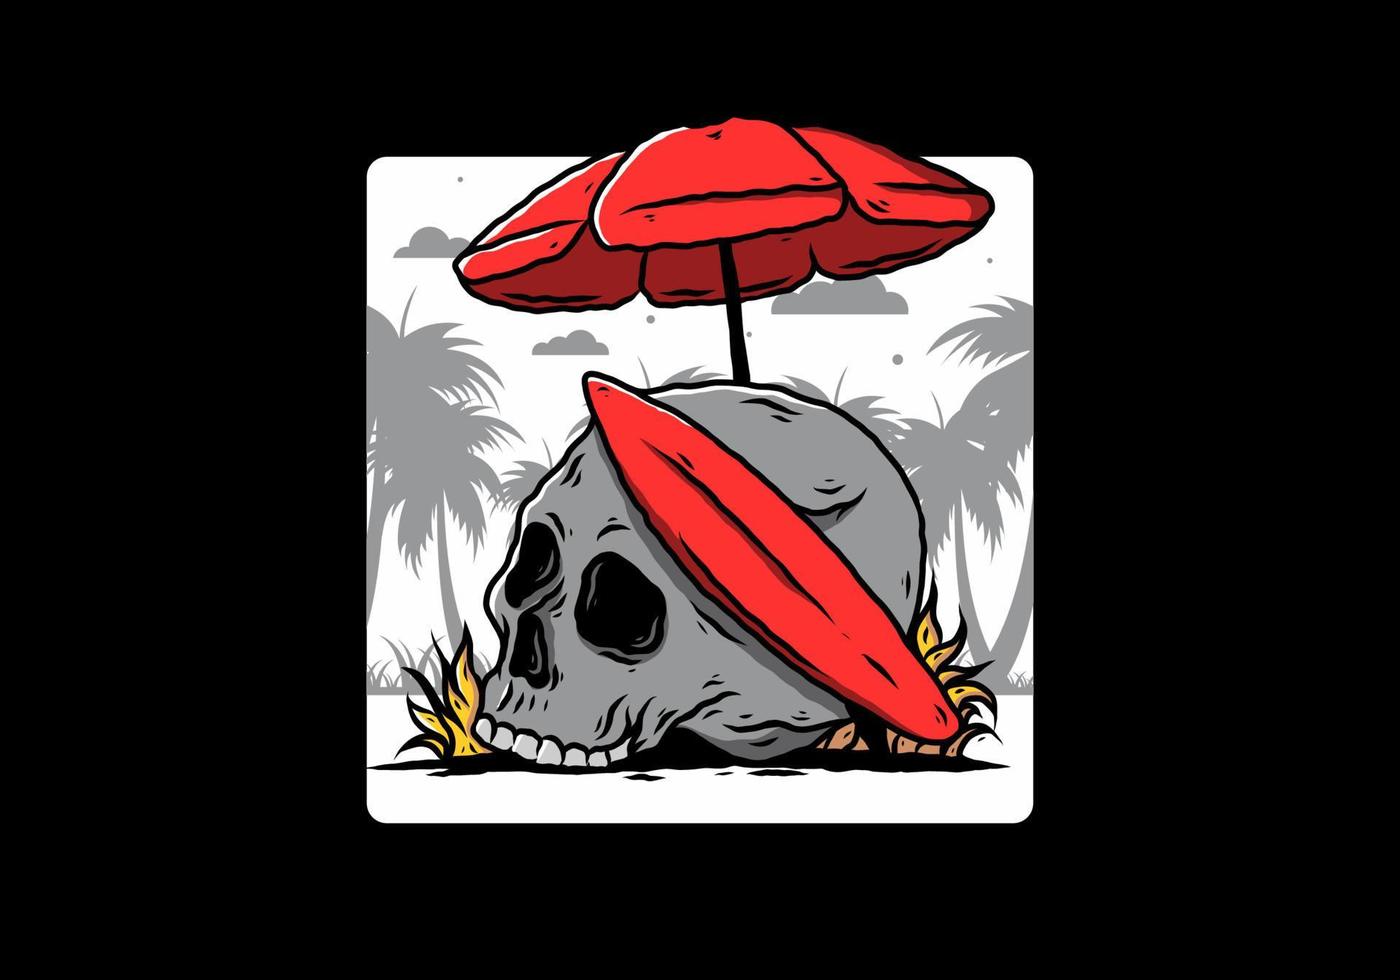 illustration av skalle med surfbräda under parasoll vektor